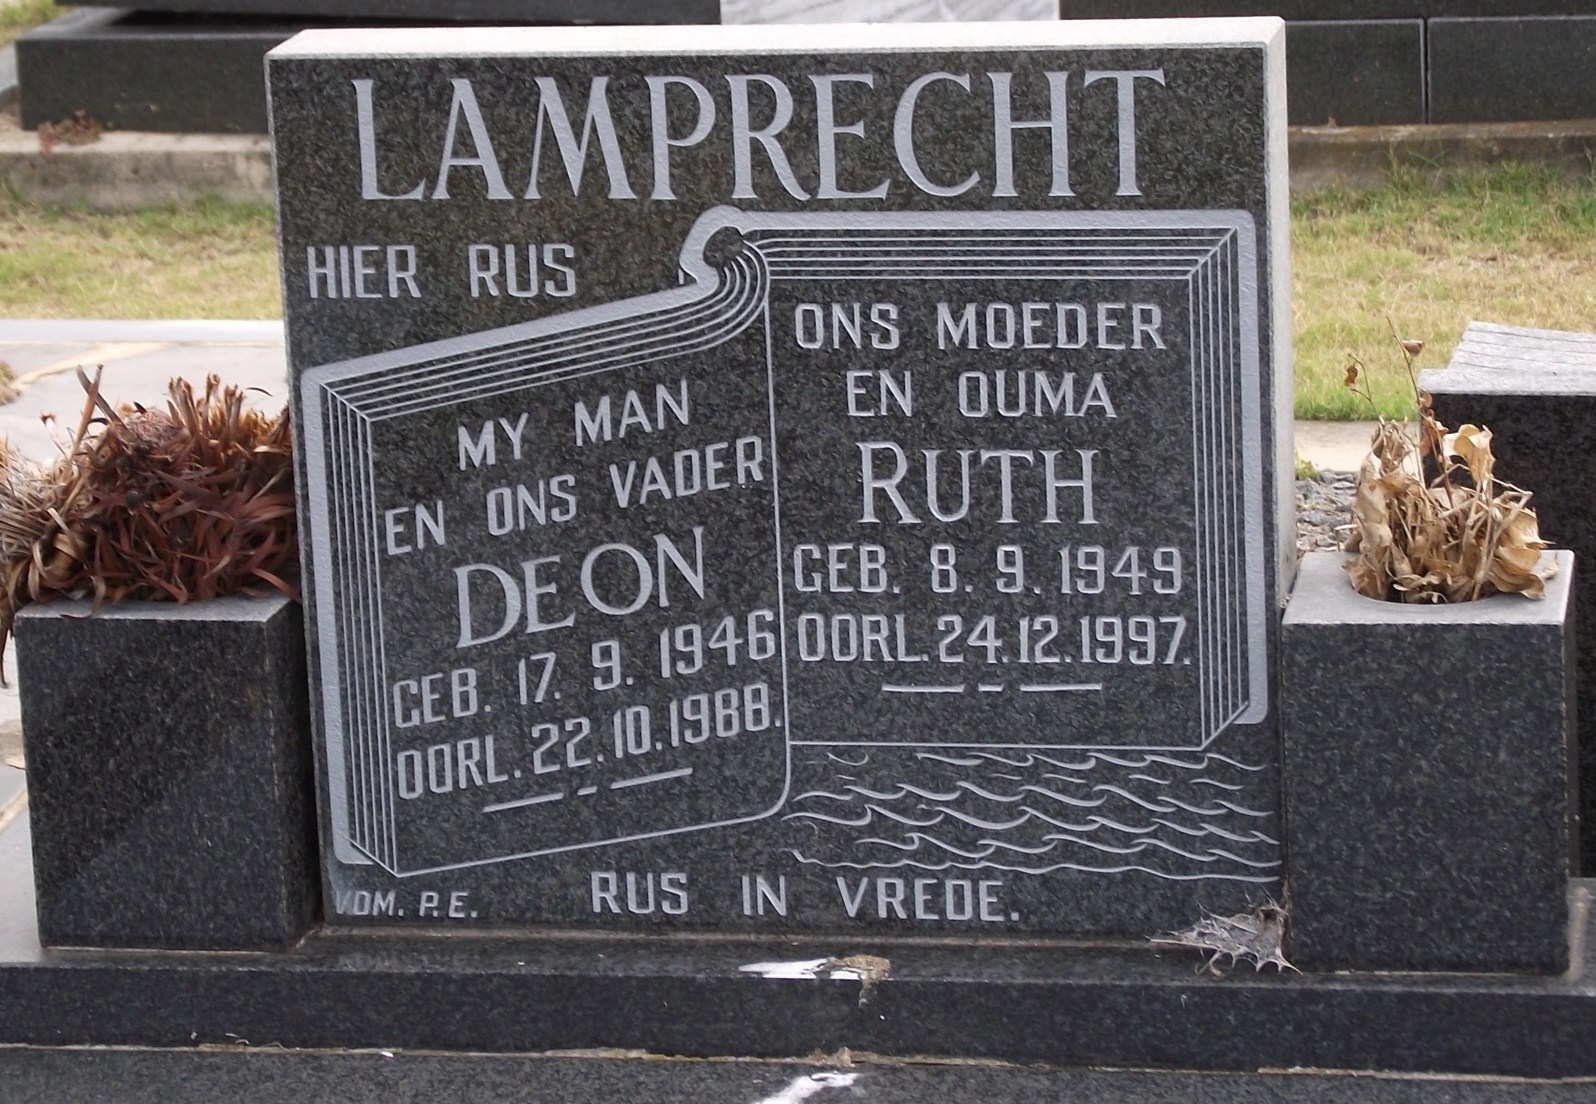 LAMPRECHT Deon 1946-1988 & Ruth 1949-1997